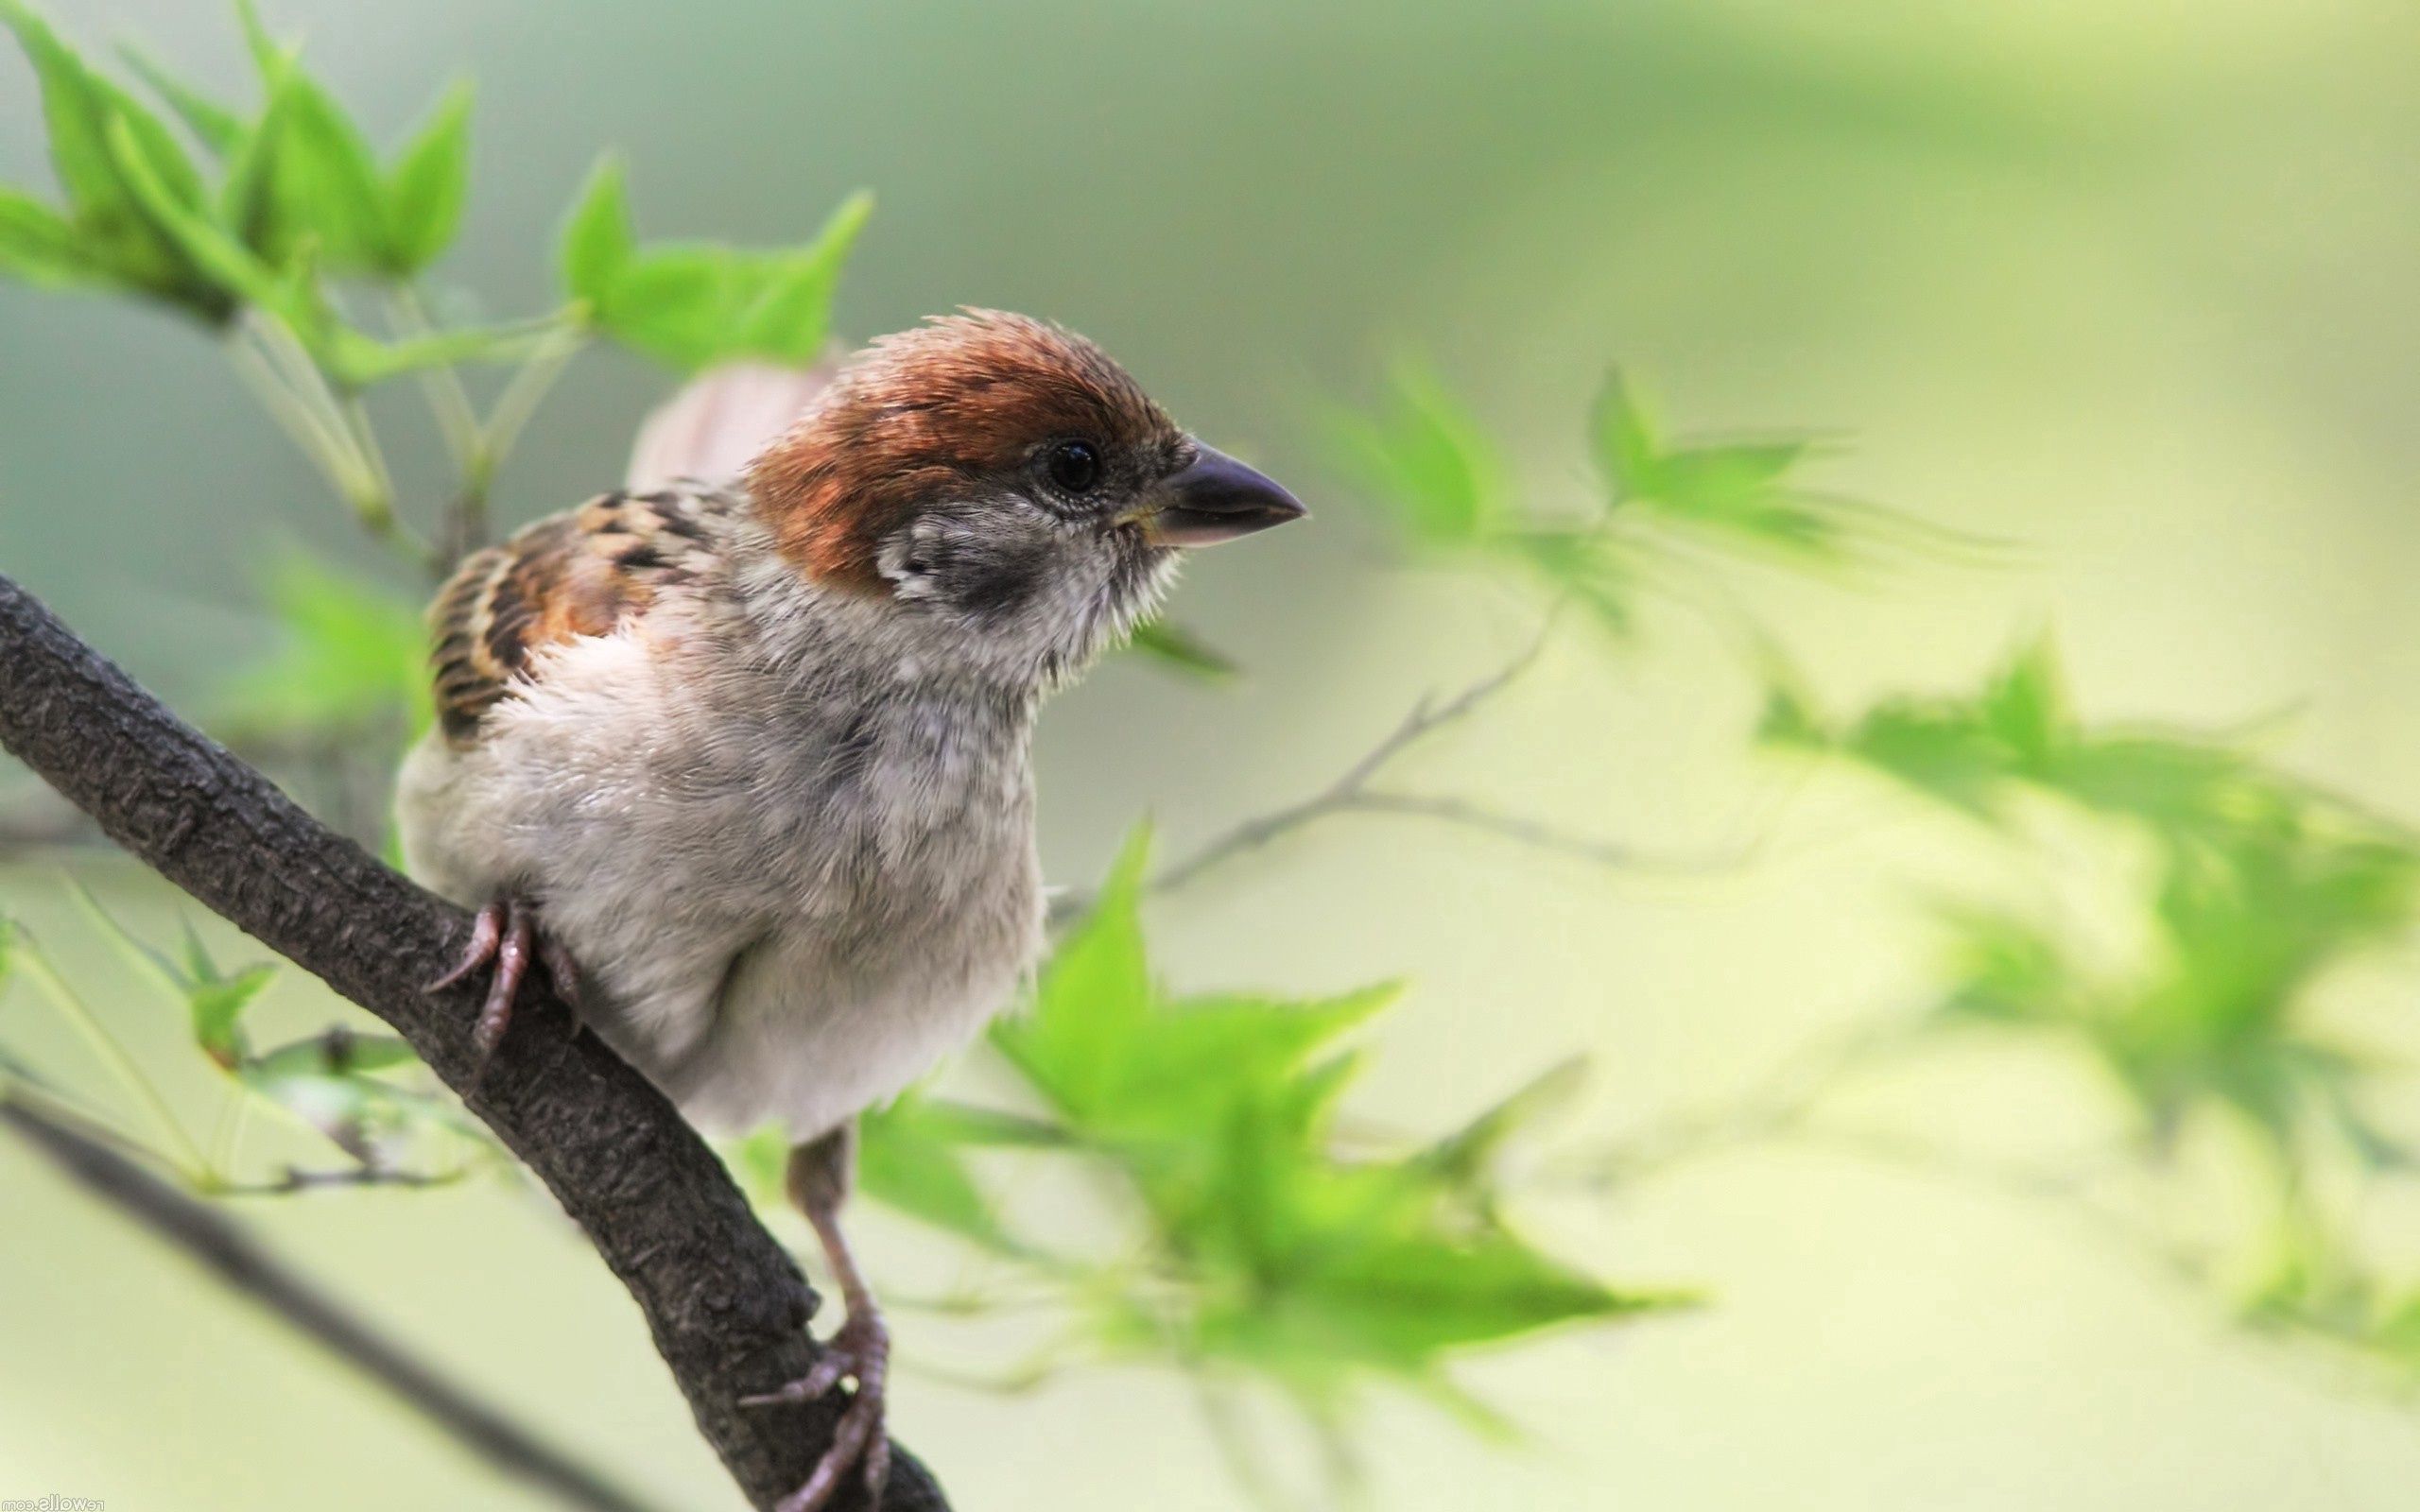 Download background greens, animals, bird, sit, sparrow, branch